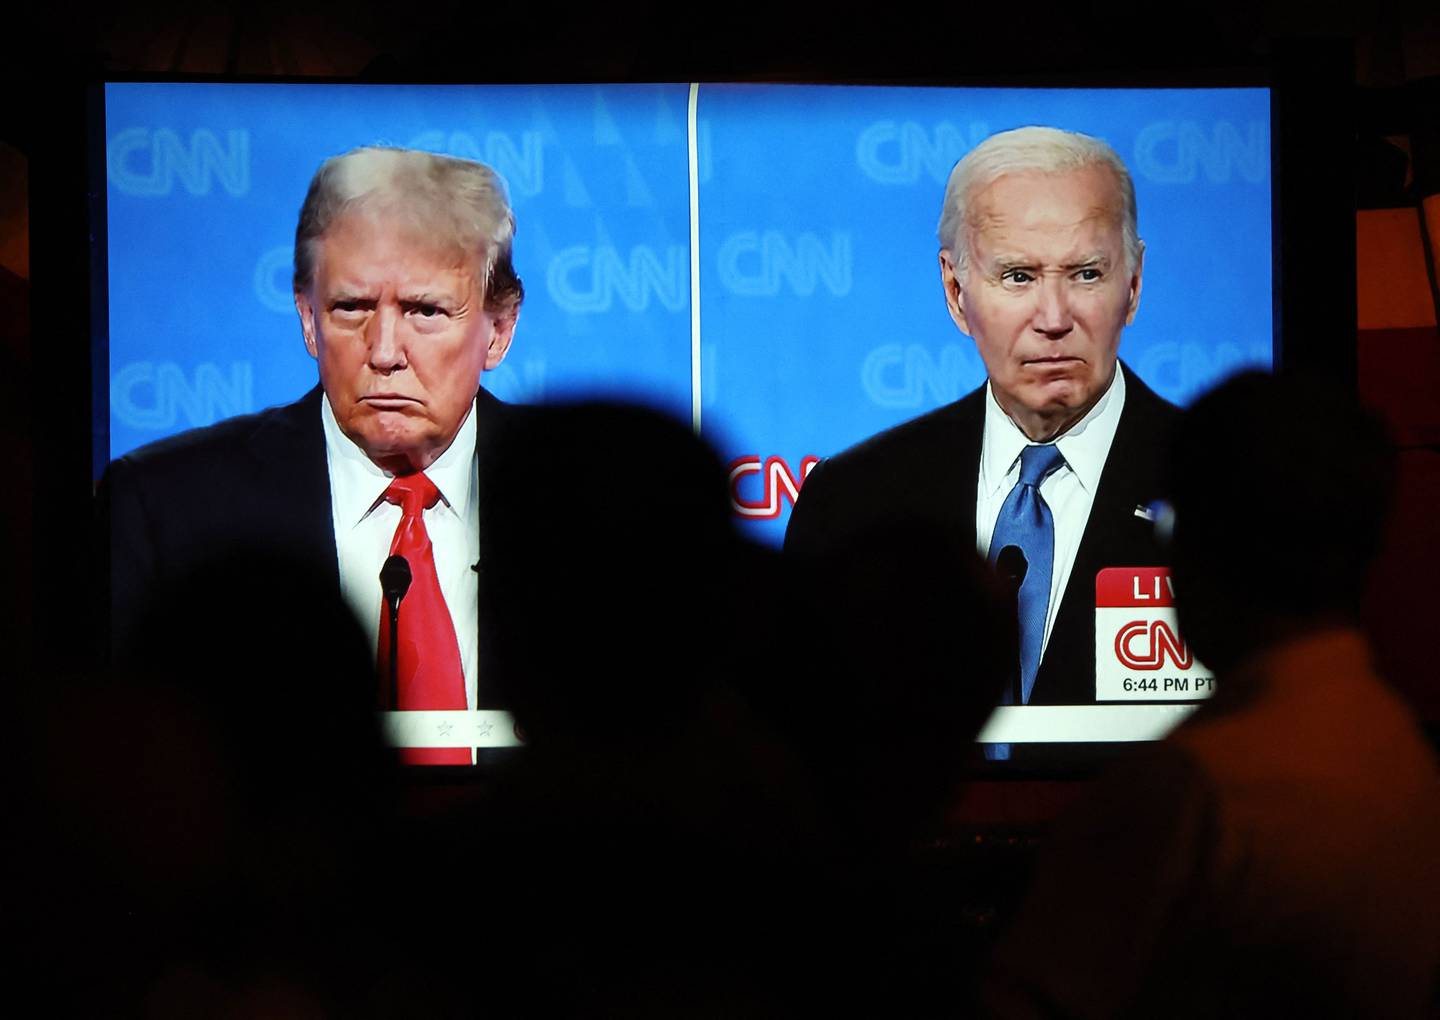 Joe Biden, candidato de los demócratas, y Donald Trump, candidato de los republicanos, tuvieron su primer debate el pasado 27 de junio de cara a las elecciones presidenciales del próximo mes de noviembre. Foto: AFP